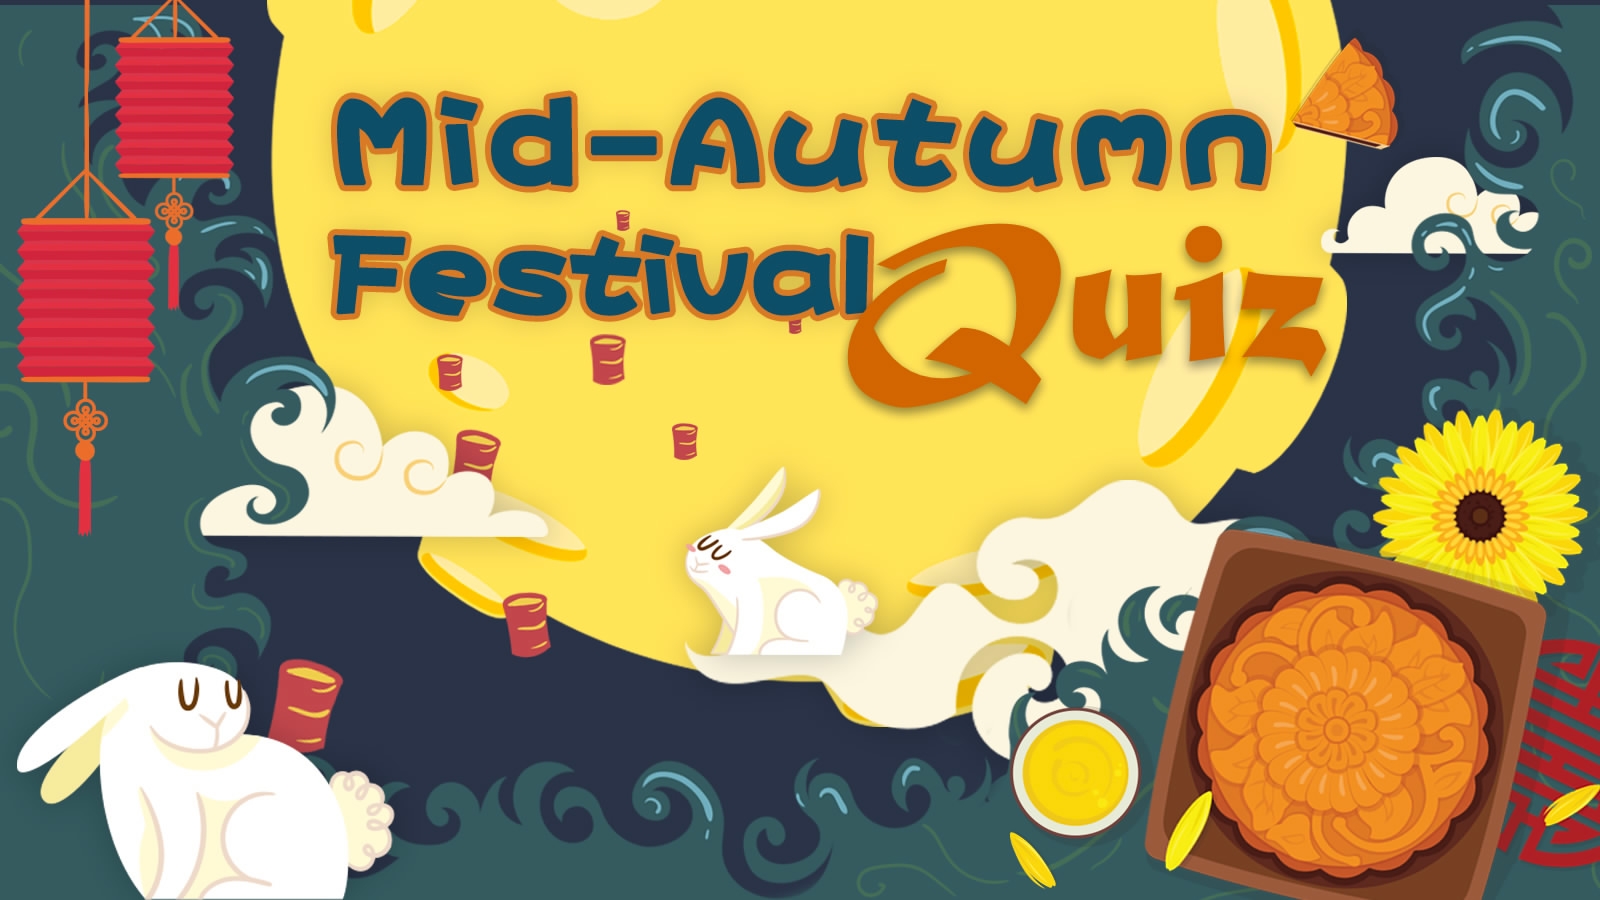 Mid autumn festival